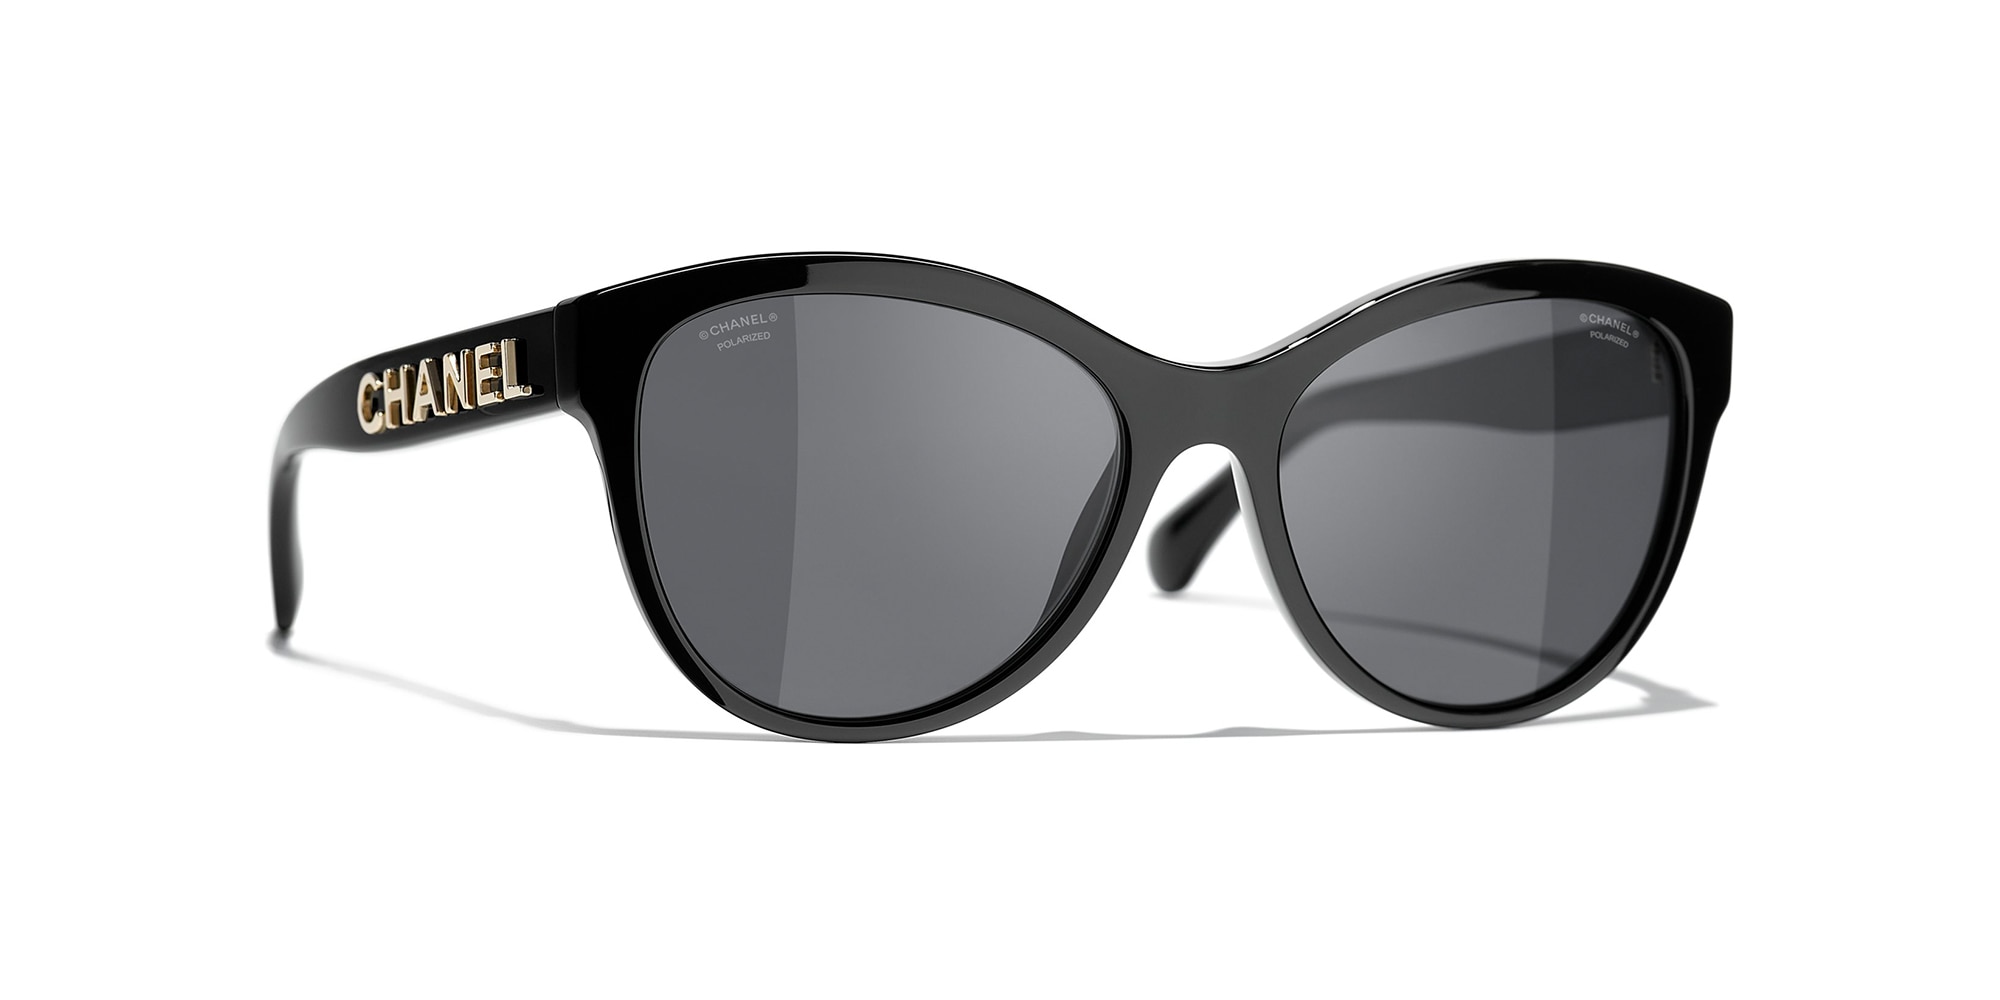 Sunglasses Oval Sunglasses acetate  Fashion  CHANEL